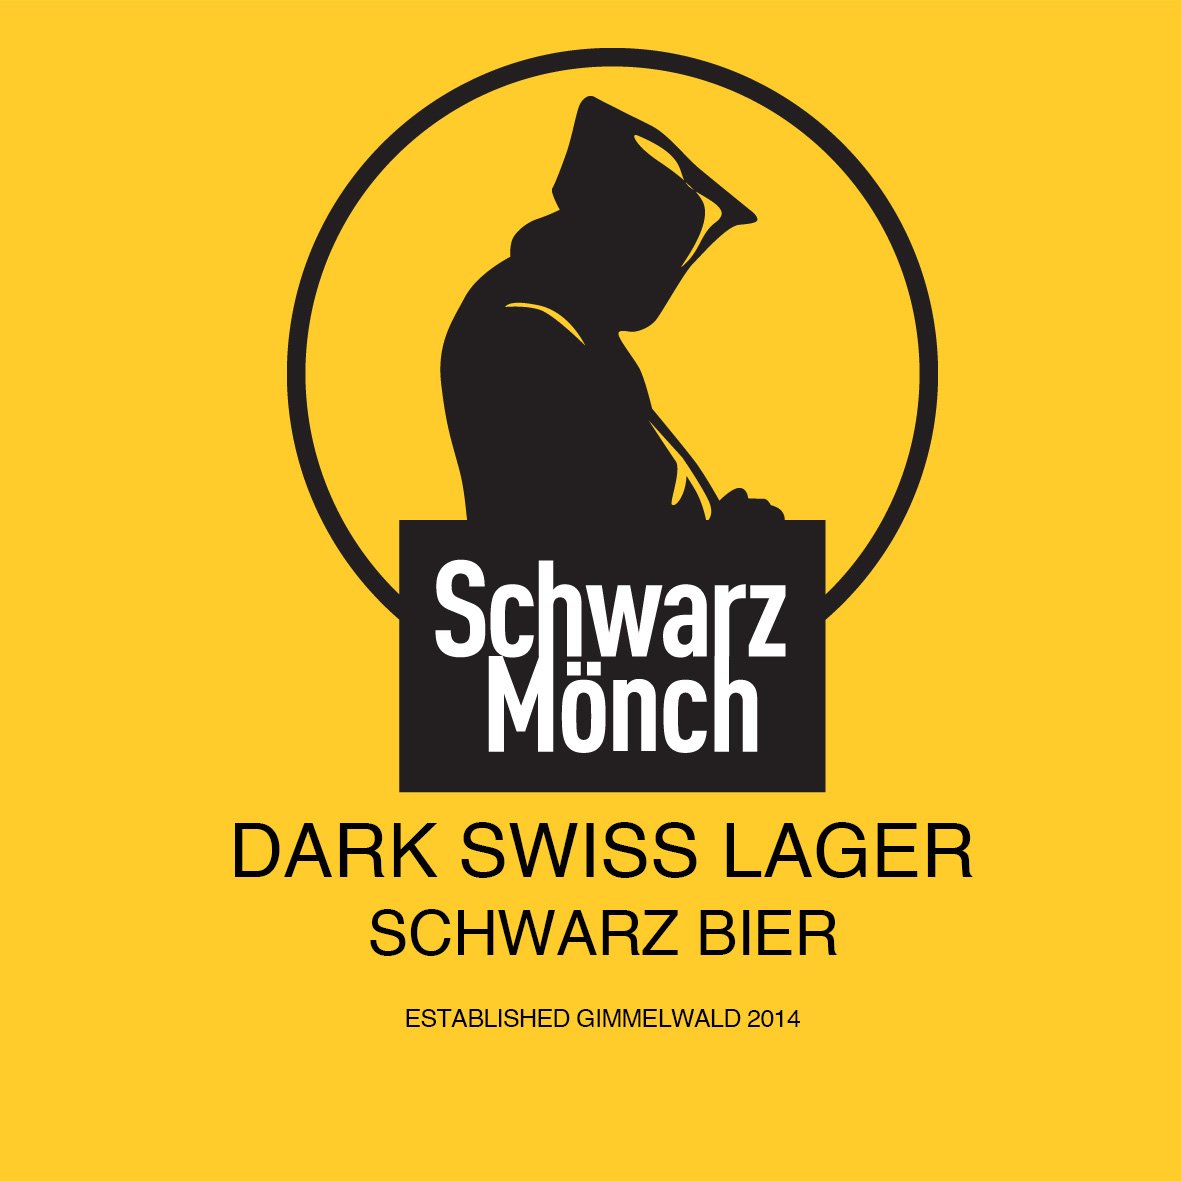 Schwarz_Monch_YellowMagnet_40x40-1@smldark.jpg